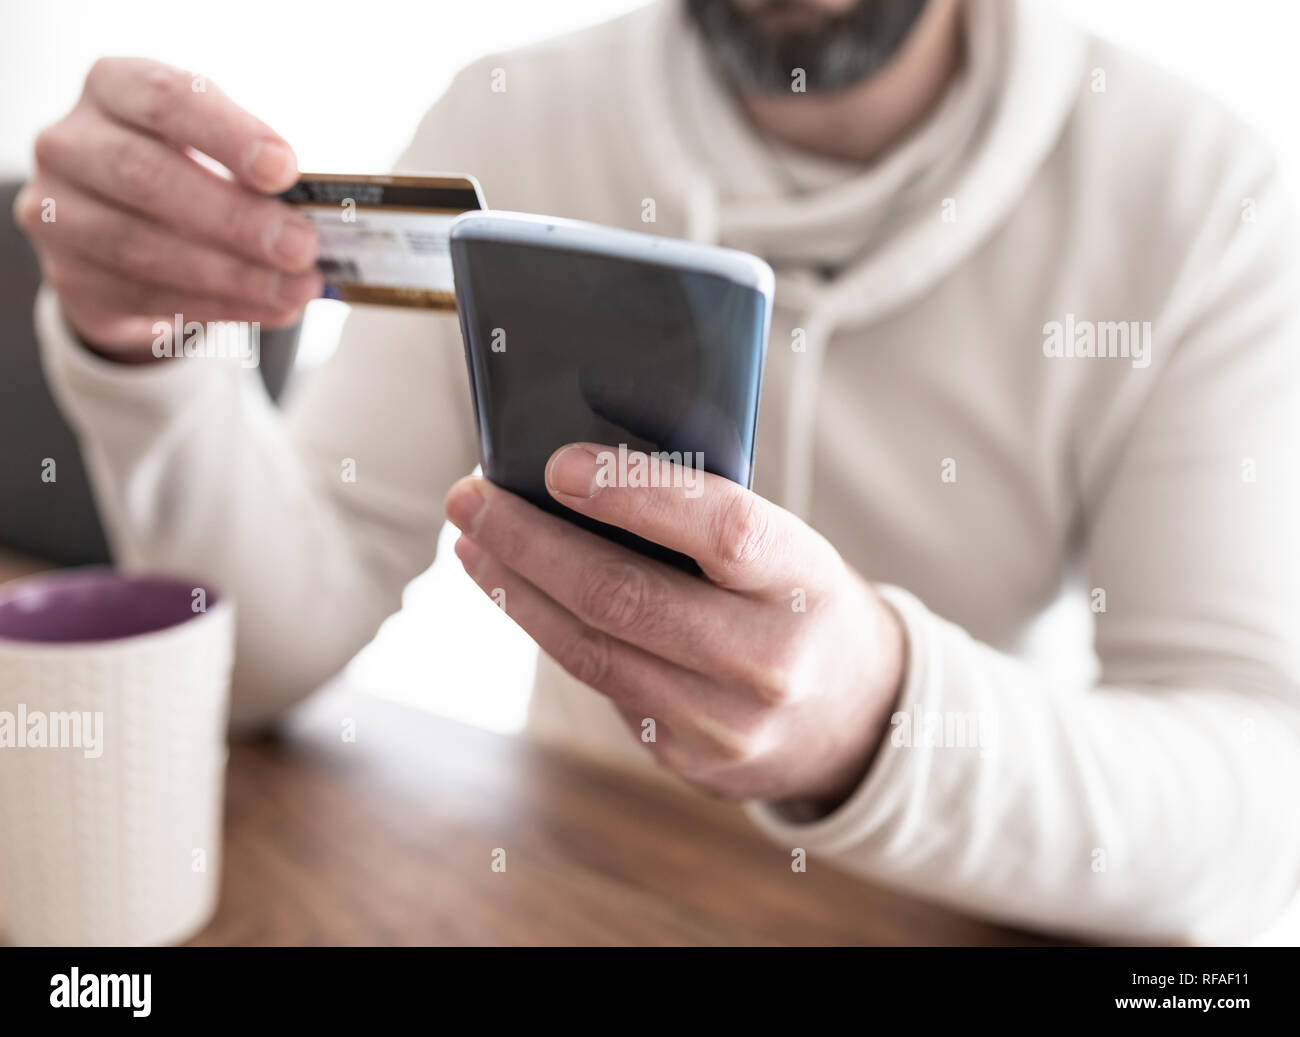 L'uomo immettendo le informazioni della carta di credito sullo smartphone Foto Stock